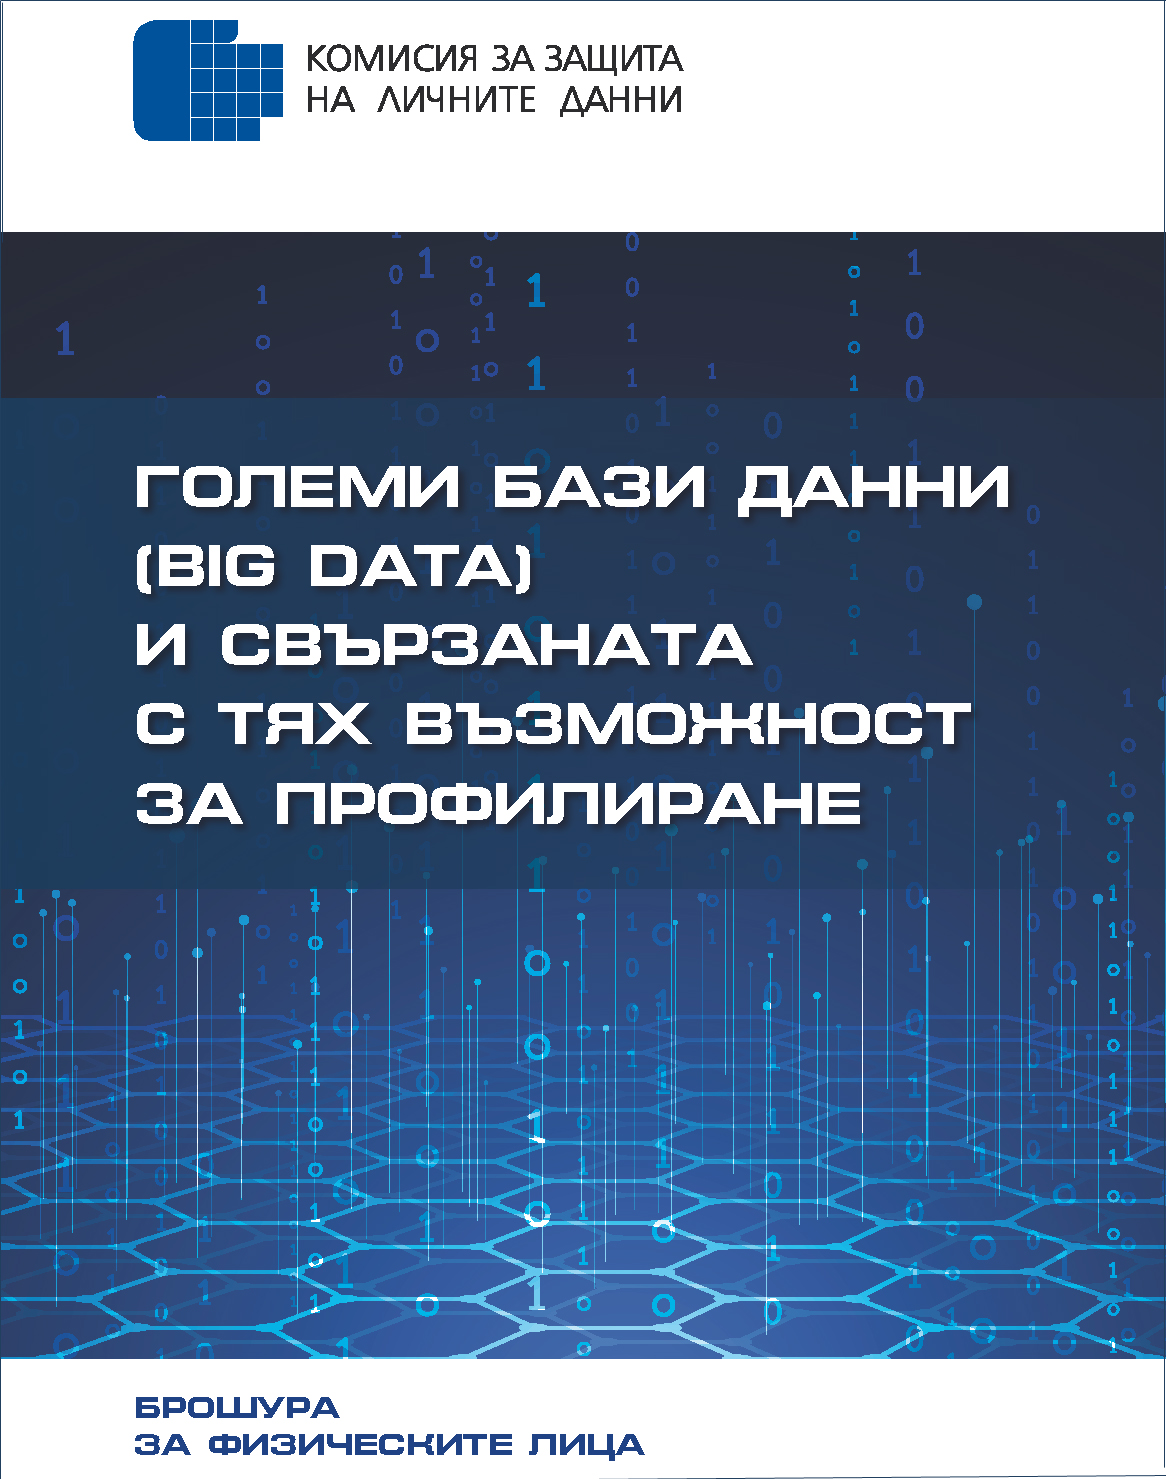 Големи бази данни (Big Data) и свързаната с тях възможност за профилиране (брошура за физическите лица)